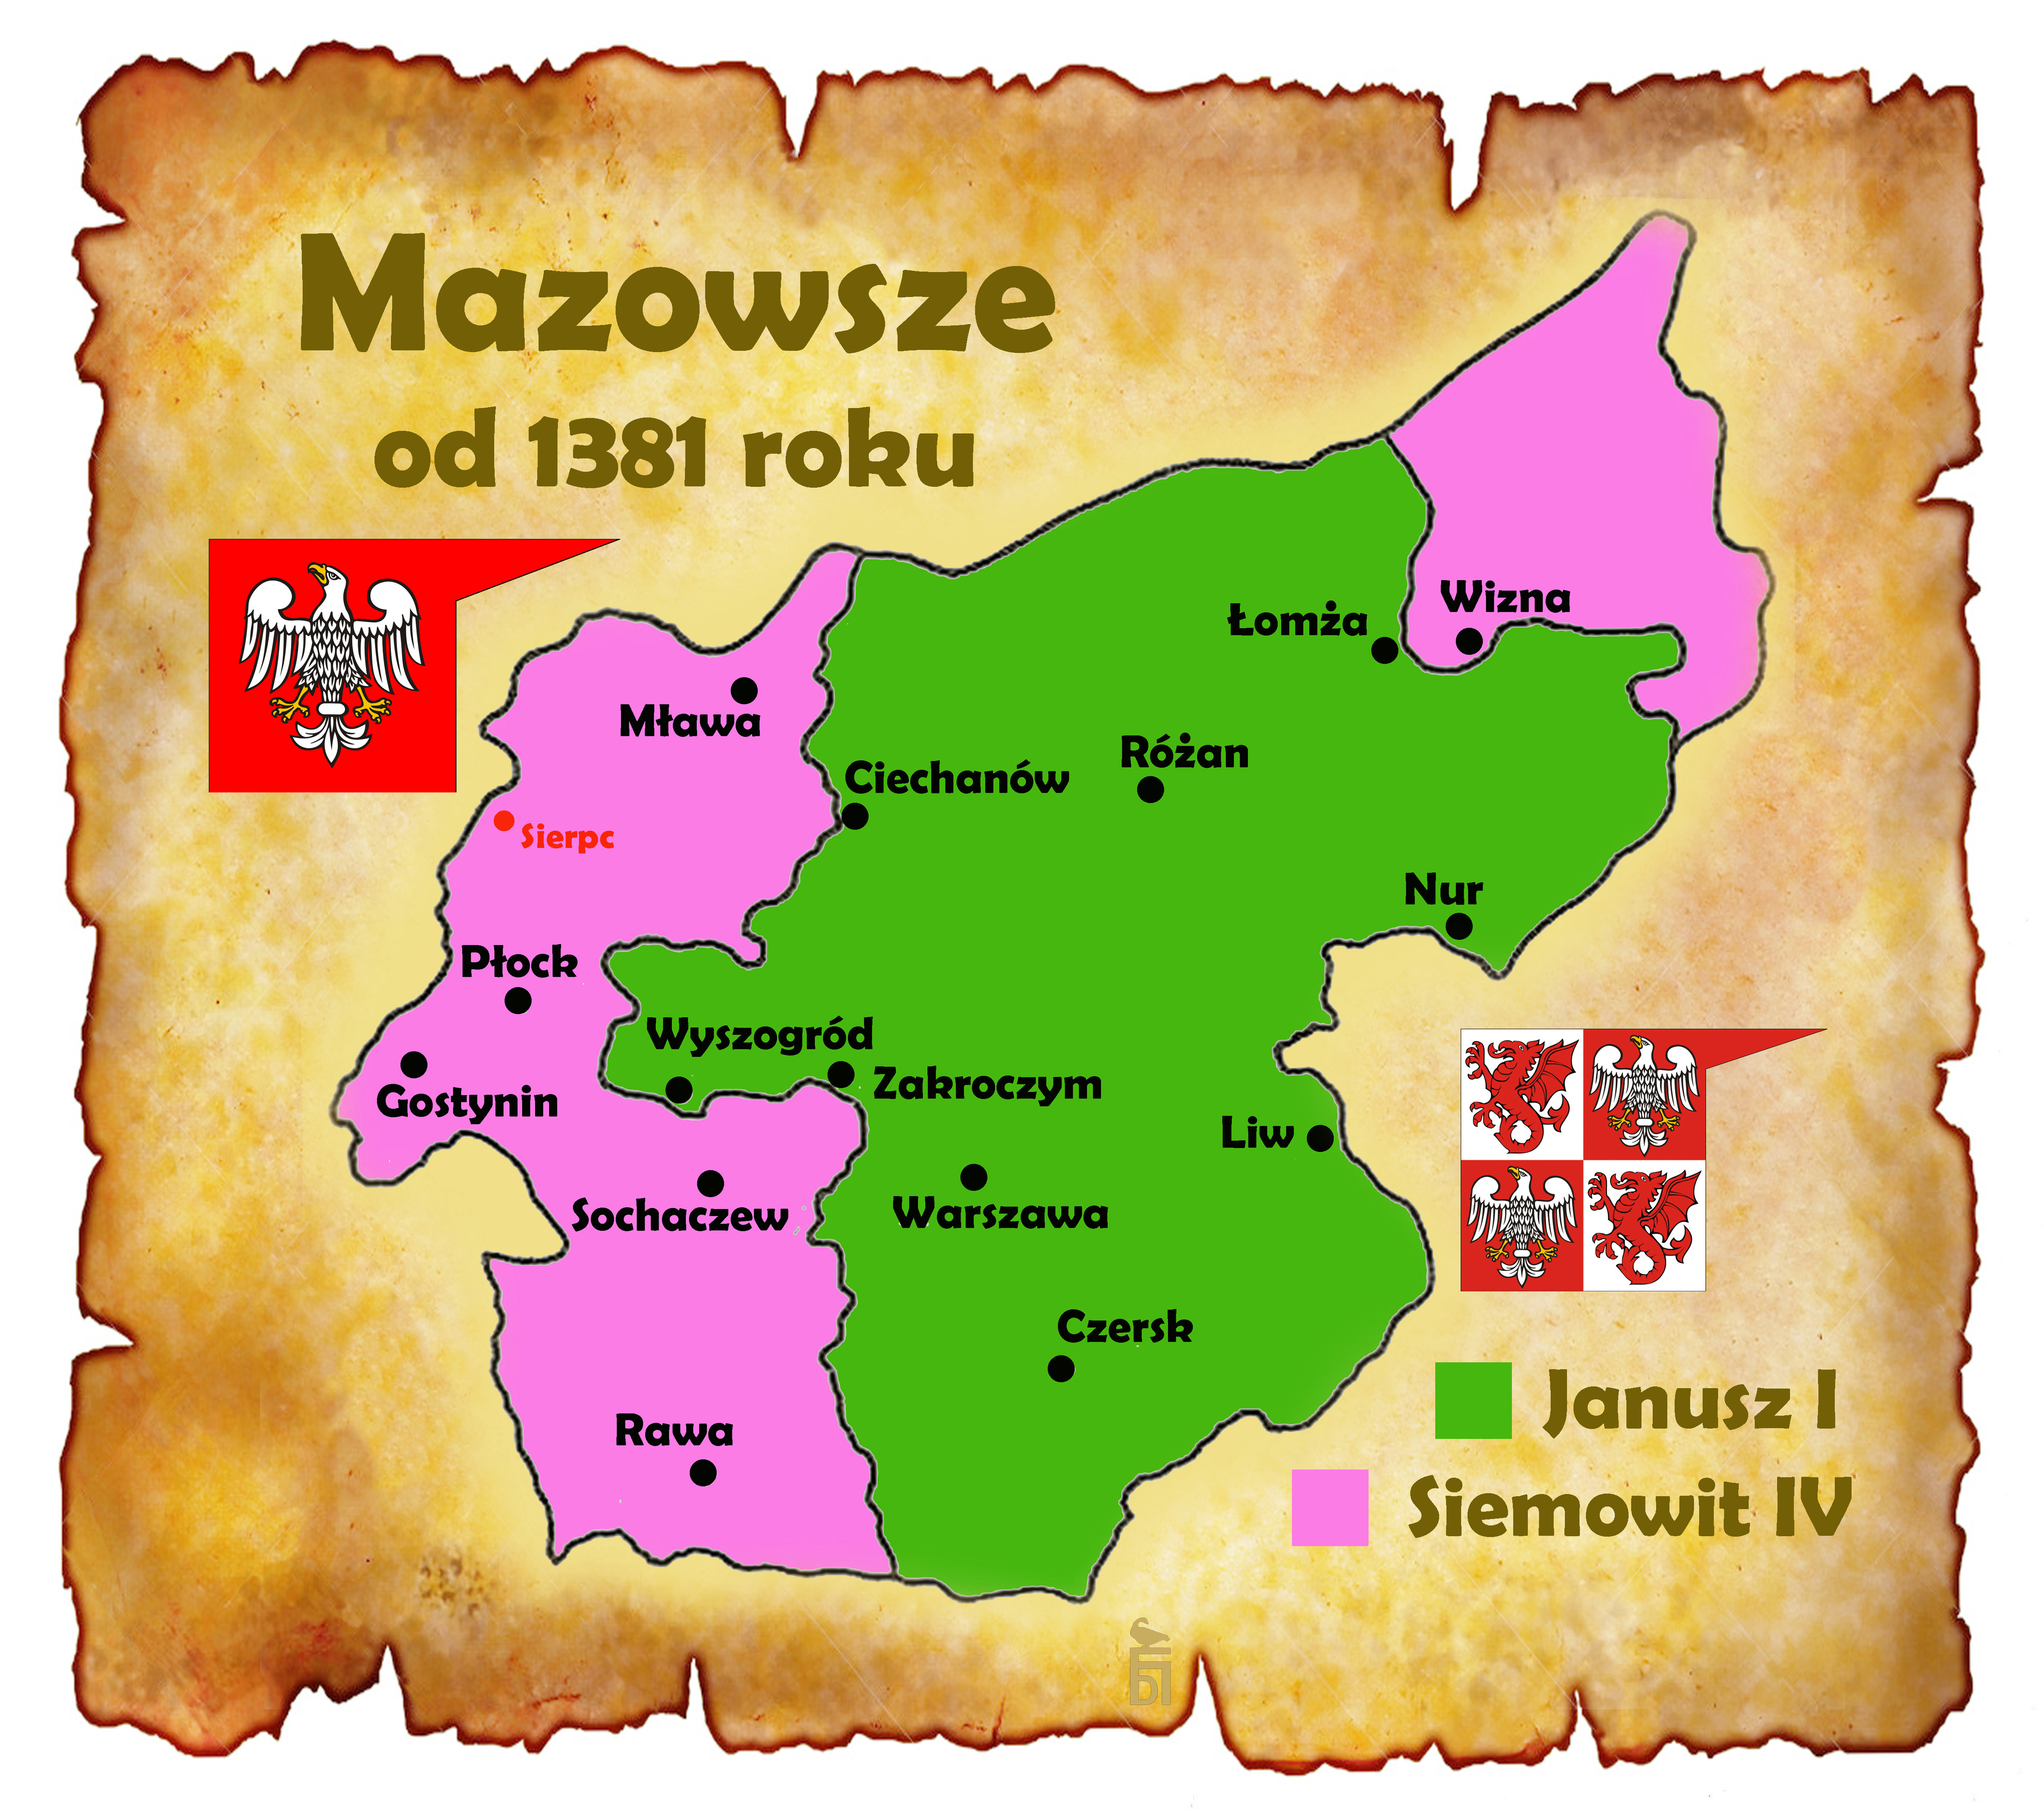 Mapa pokazująca Mazowsze w czasach książąt Janusza I i Siemowita IV. Rys. autor.